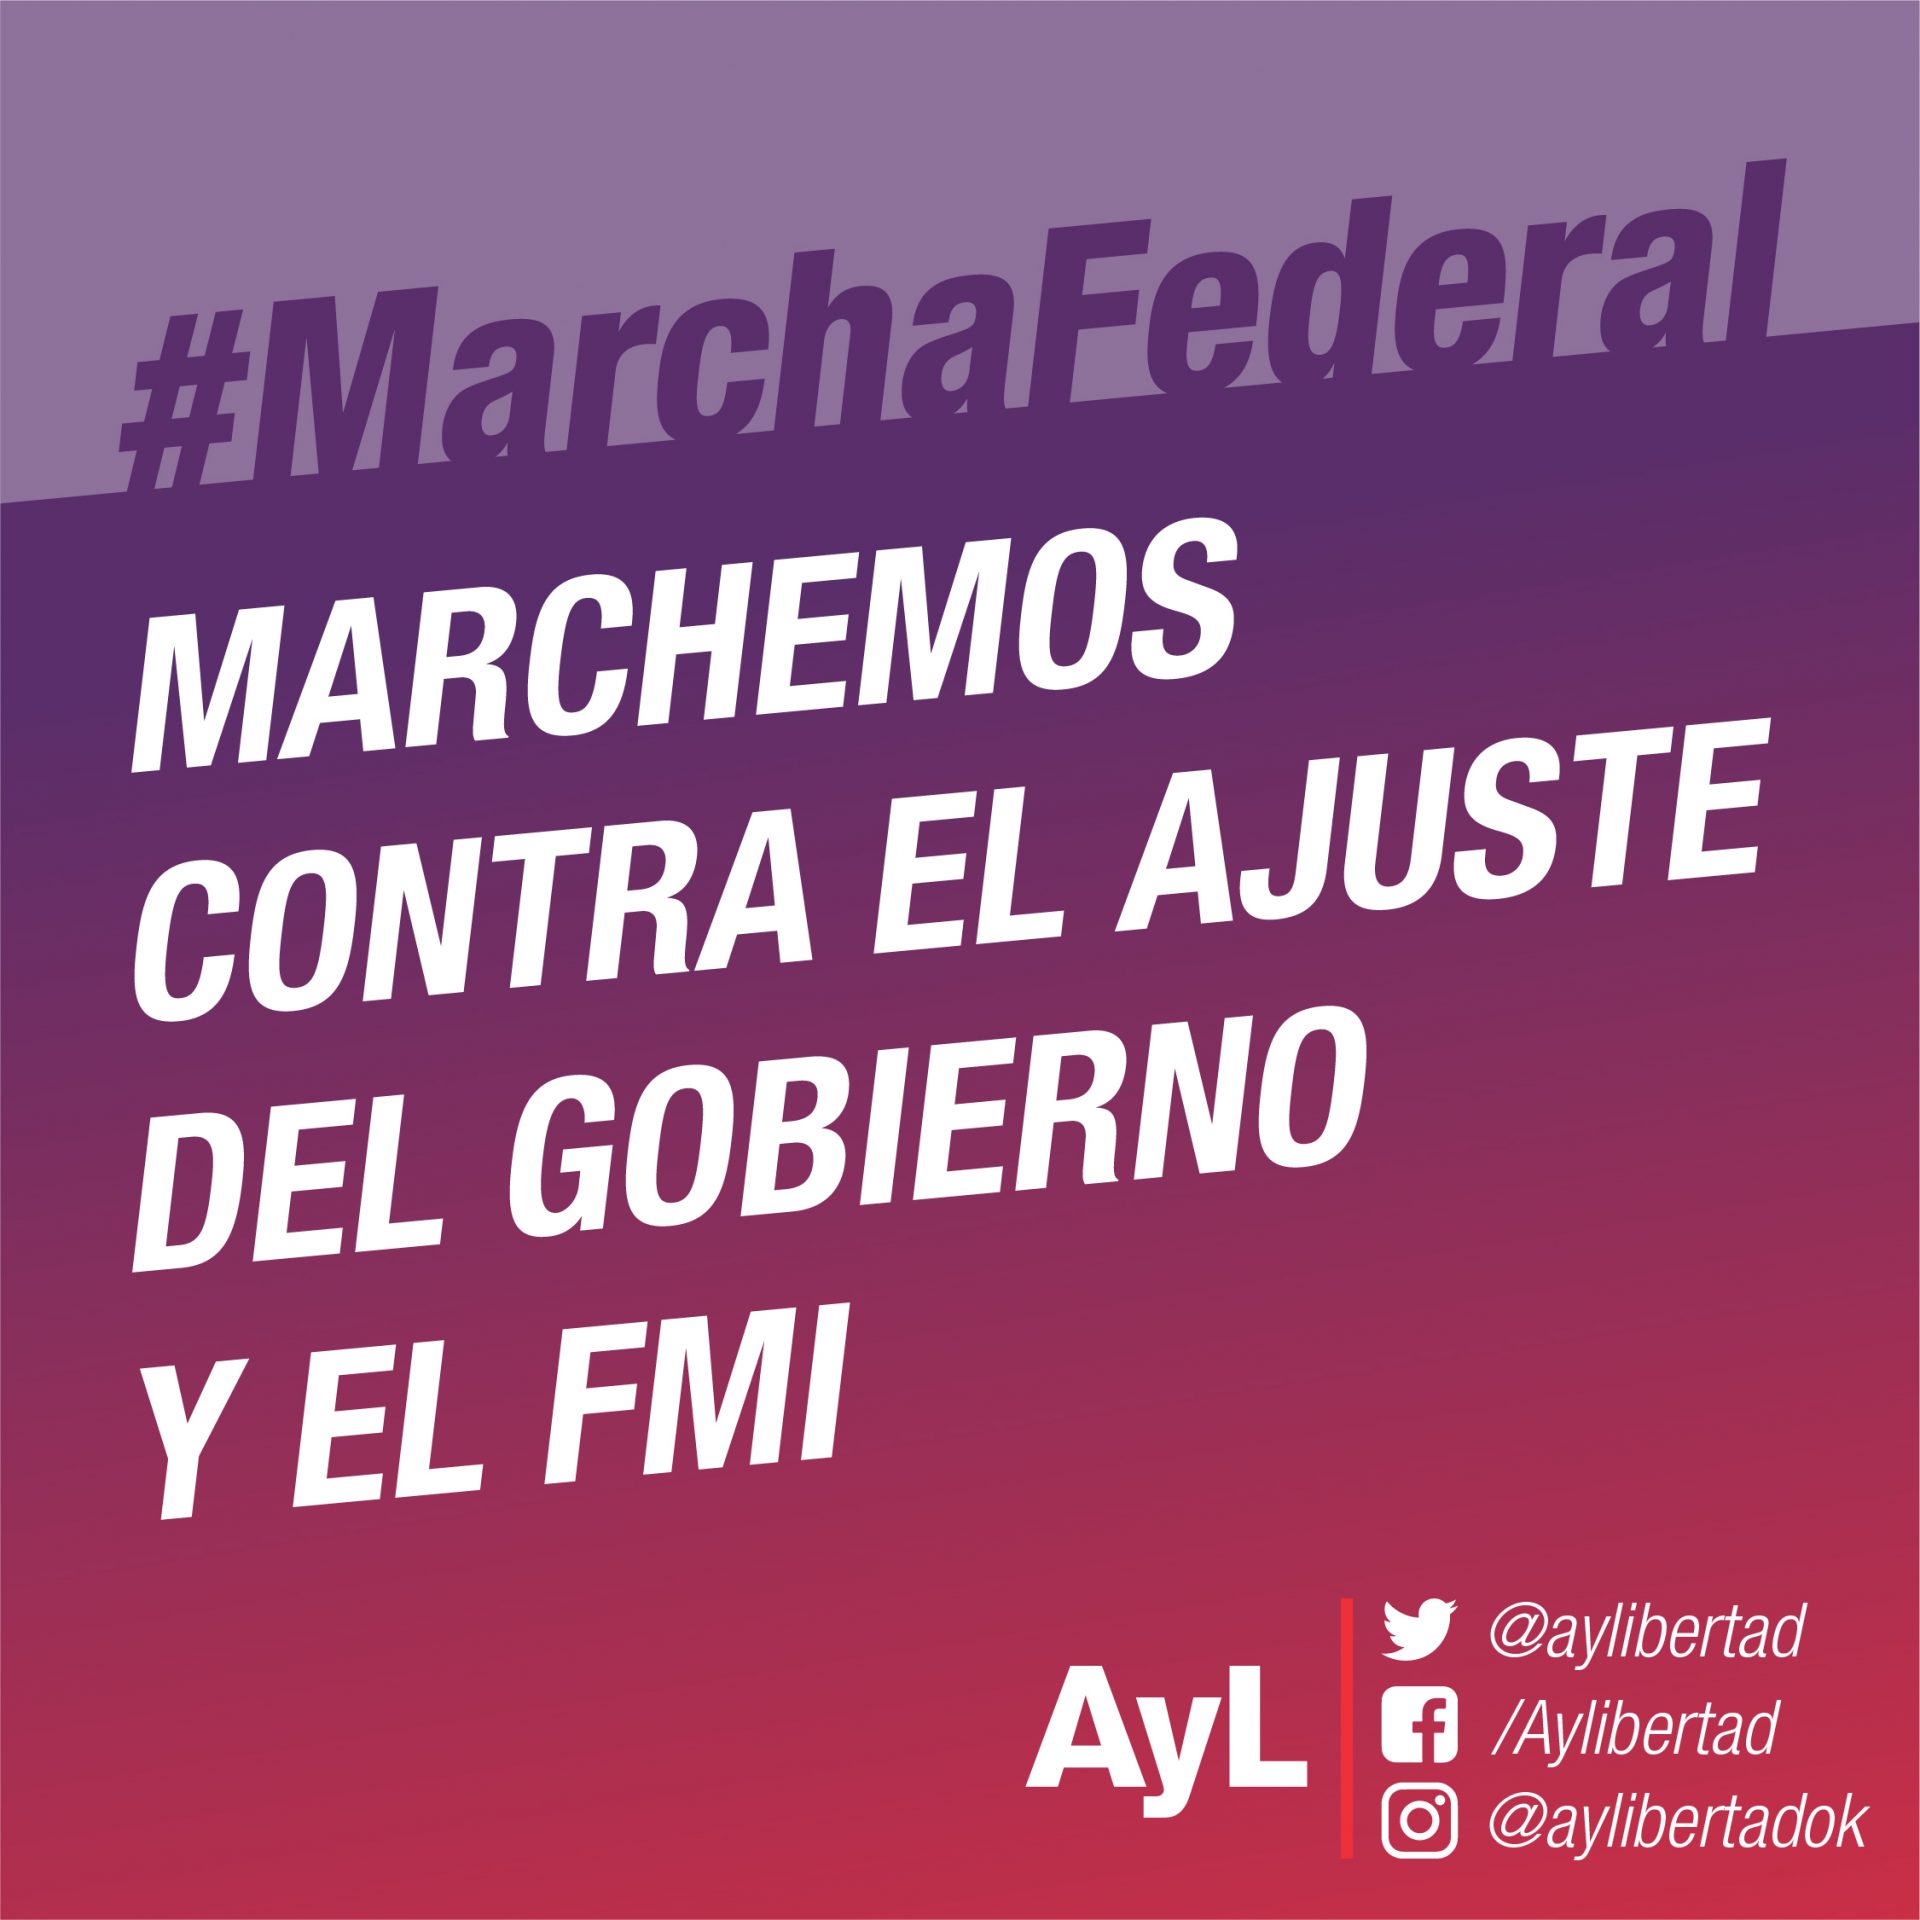 Marcha Federal - Marchemos contra el ajuste del gobierno y el FMI